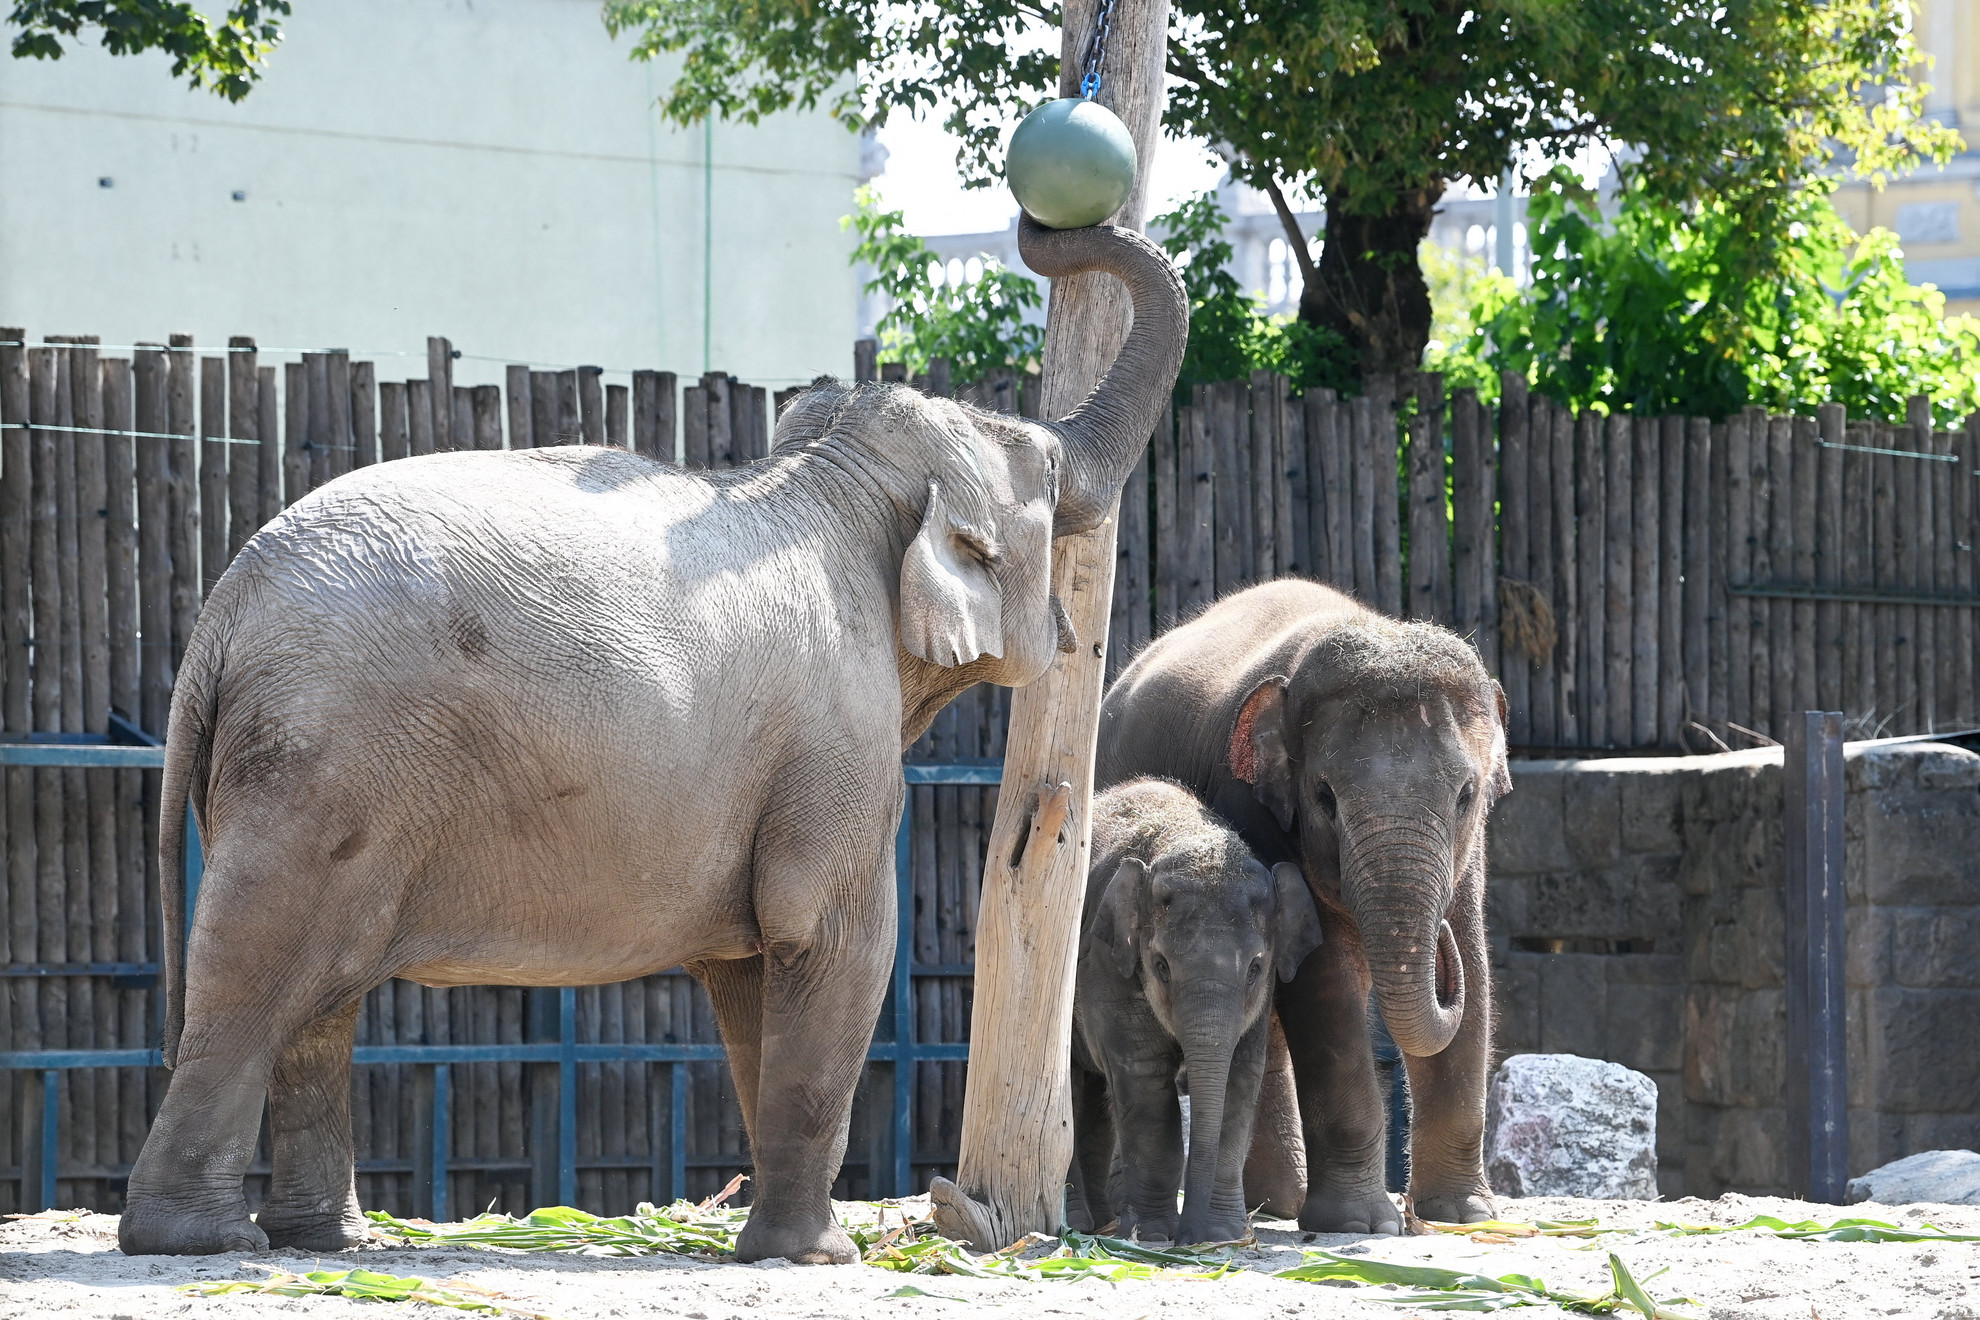 Ázsiai elefántok játszanak a Fővárosi Állat- és Növénykertben 2022. augusztus 9-én